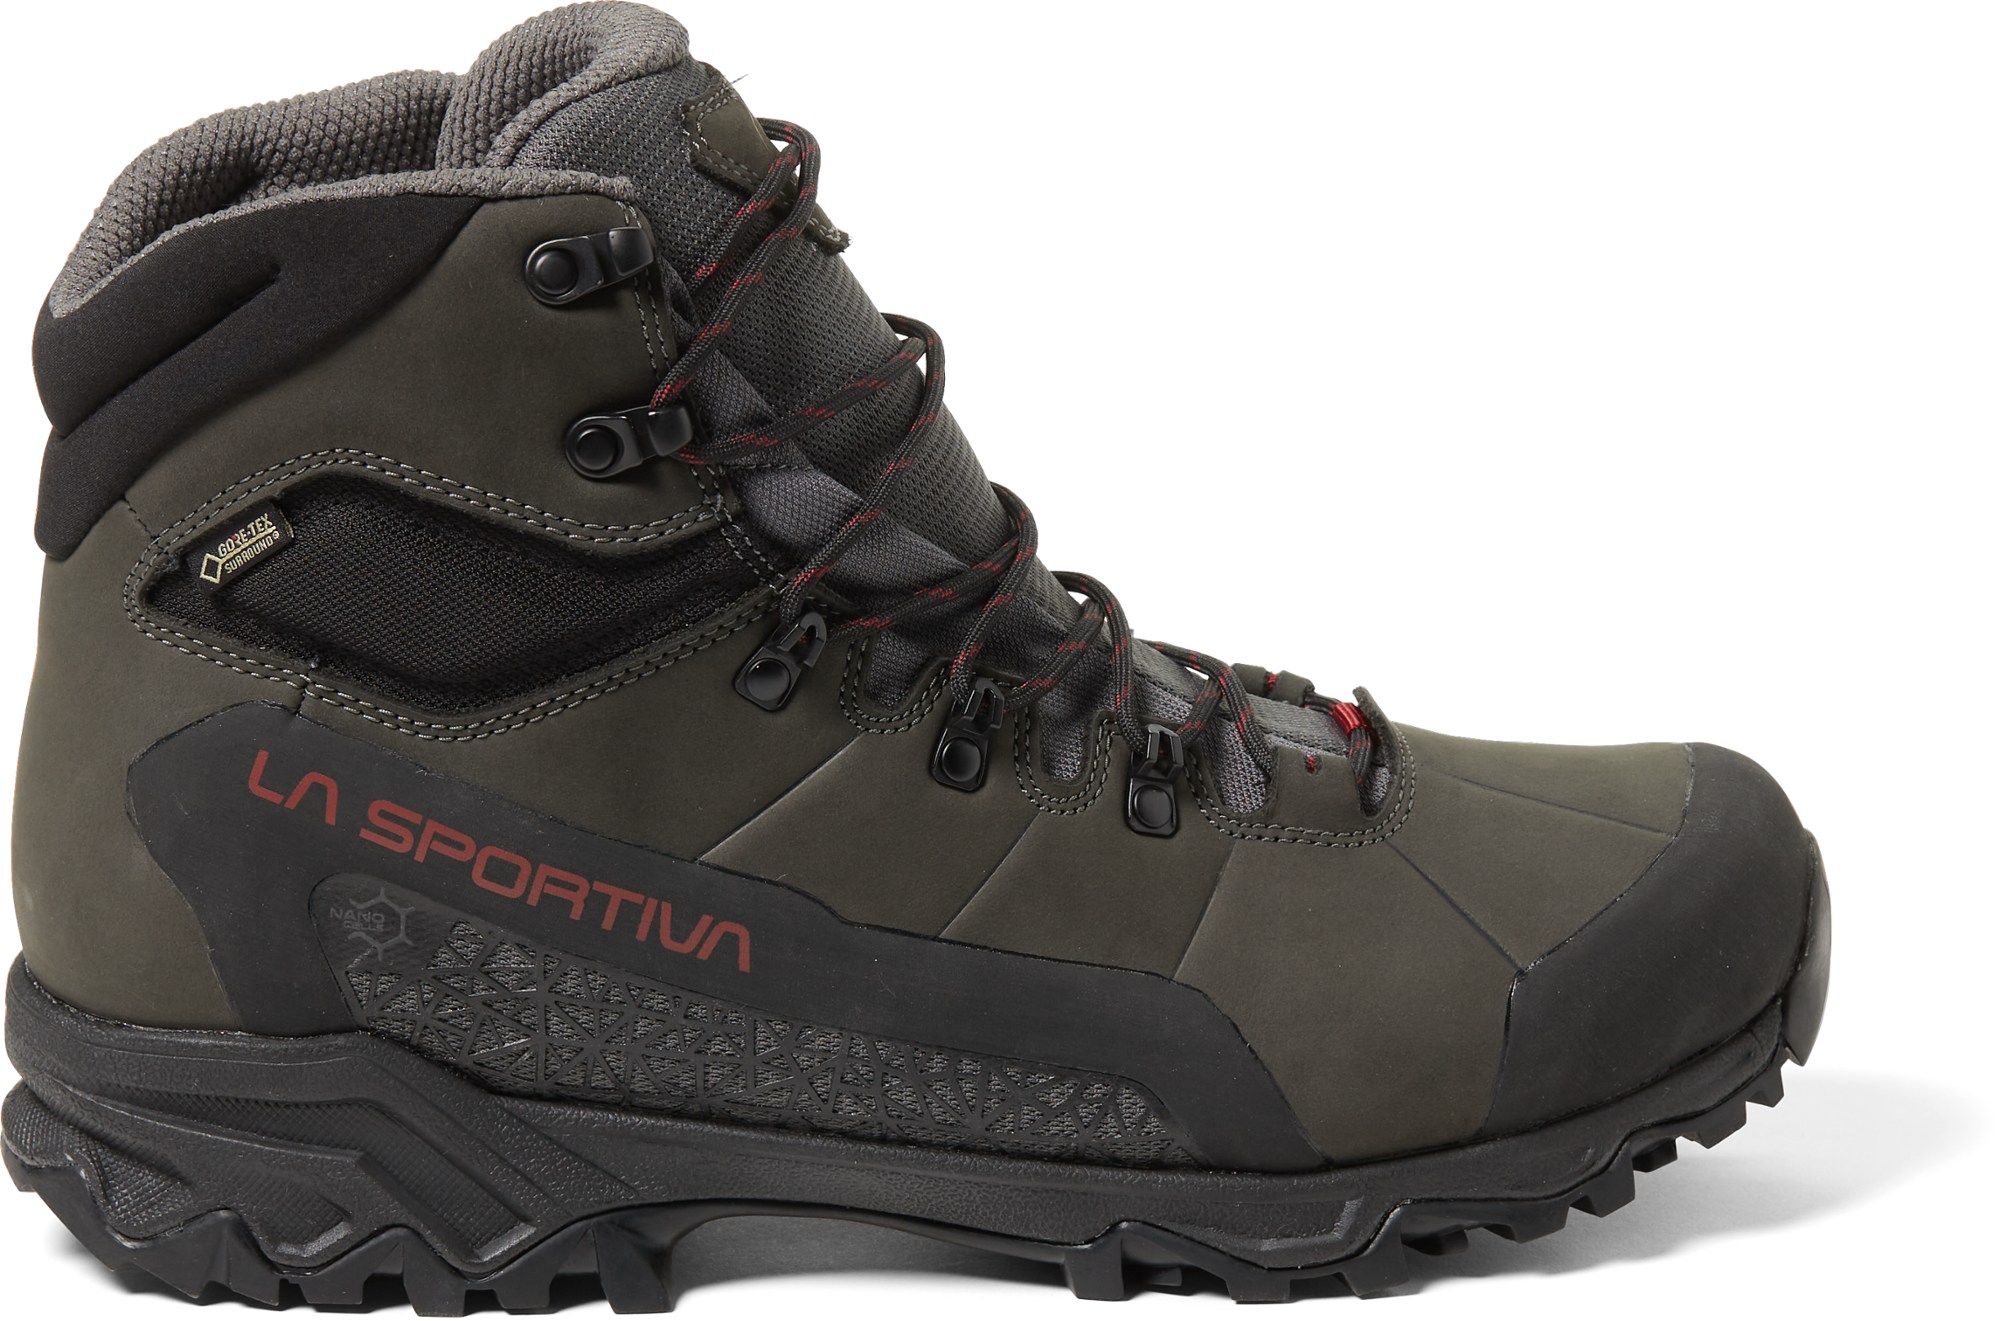 La Sportive Nucleo High II GTX hiking boot